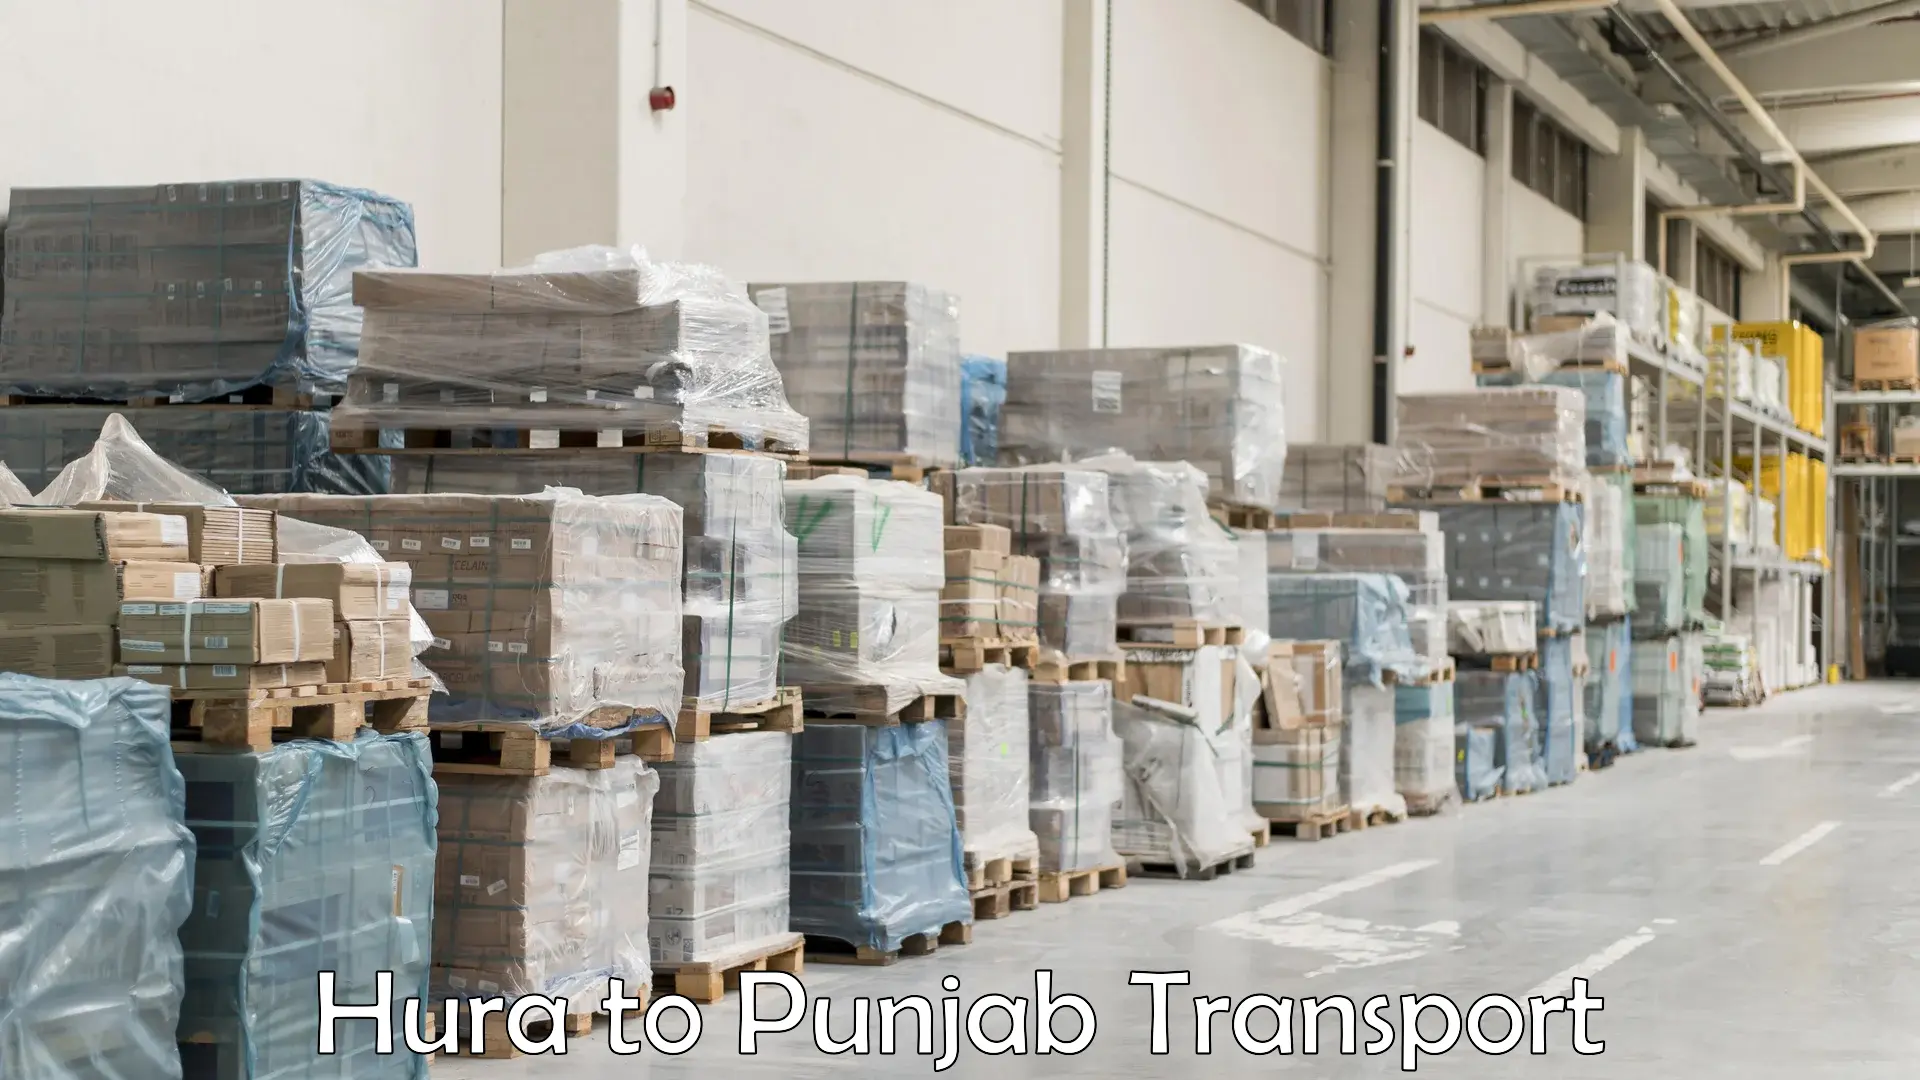 Bike transport service Hura to Punjab